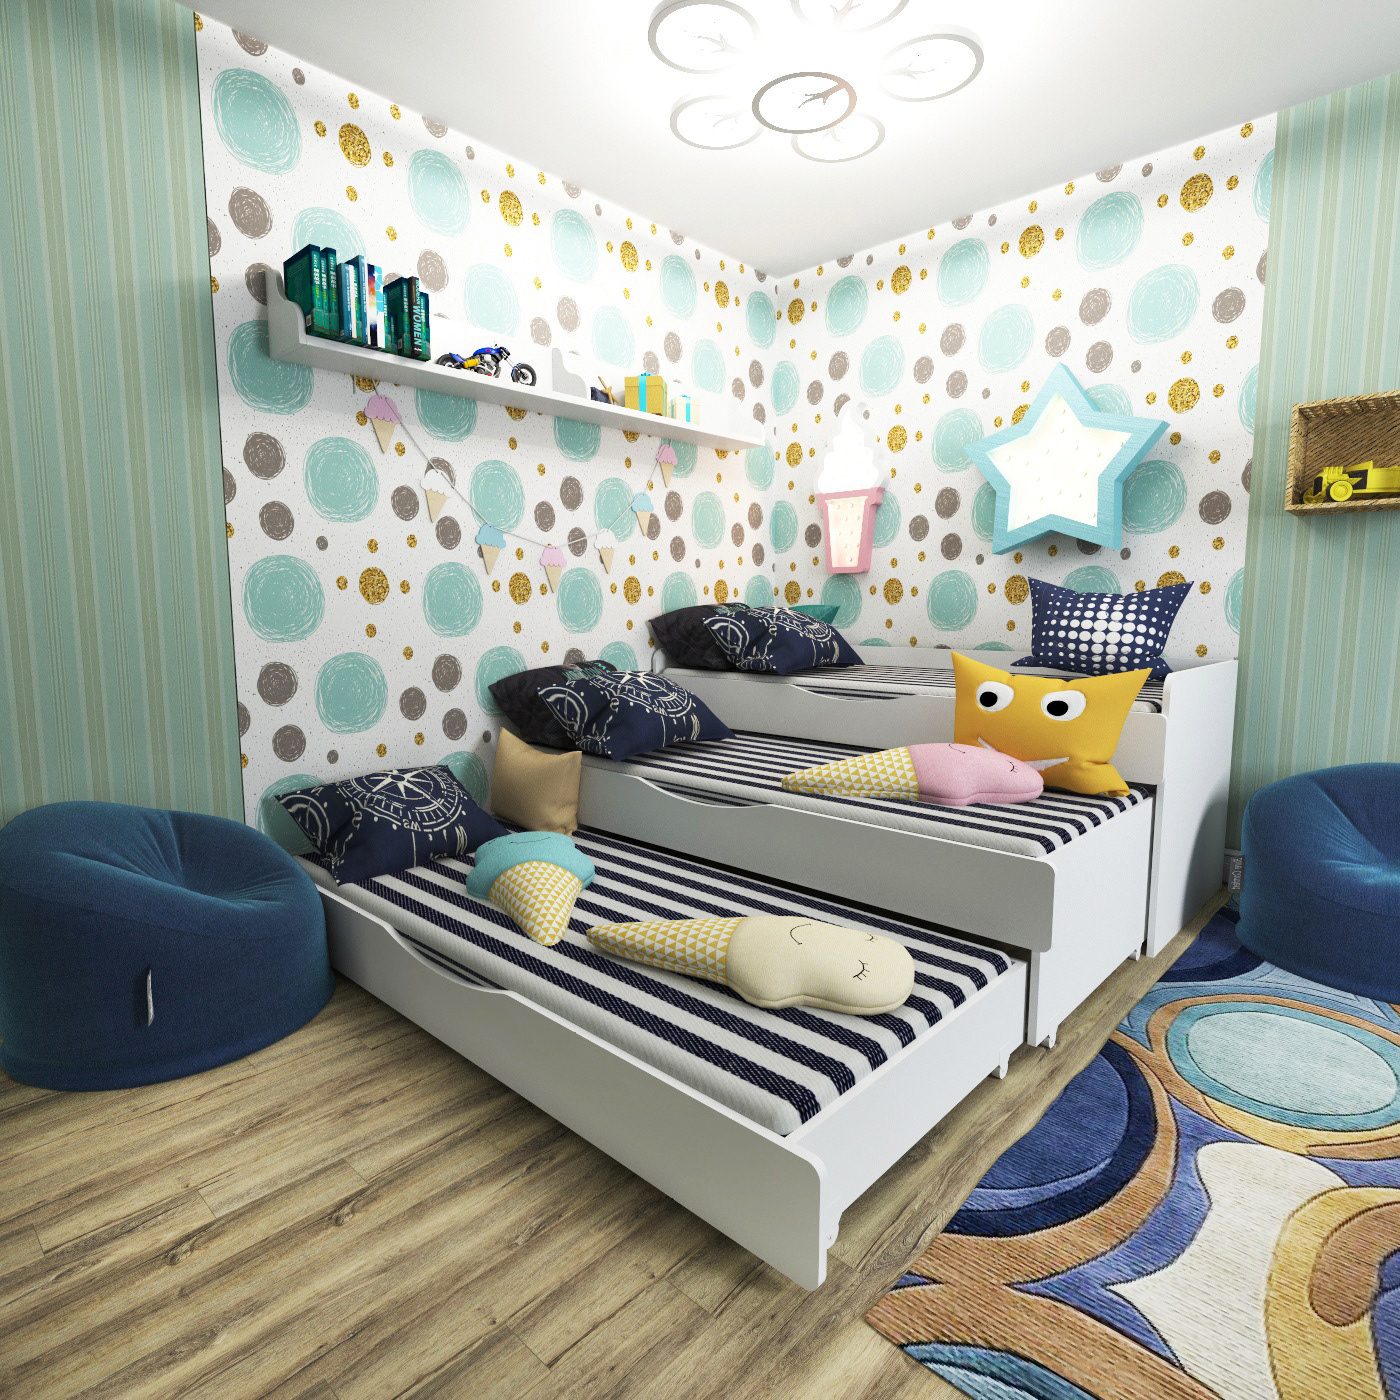 3ds max design Interior моделирование визуализация детские кровати детская комната дизайн кроваток интерьер детской моделирование кроваток